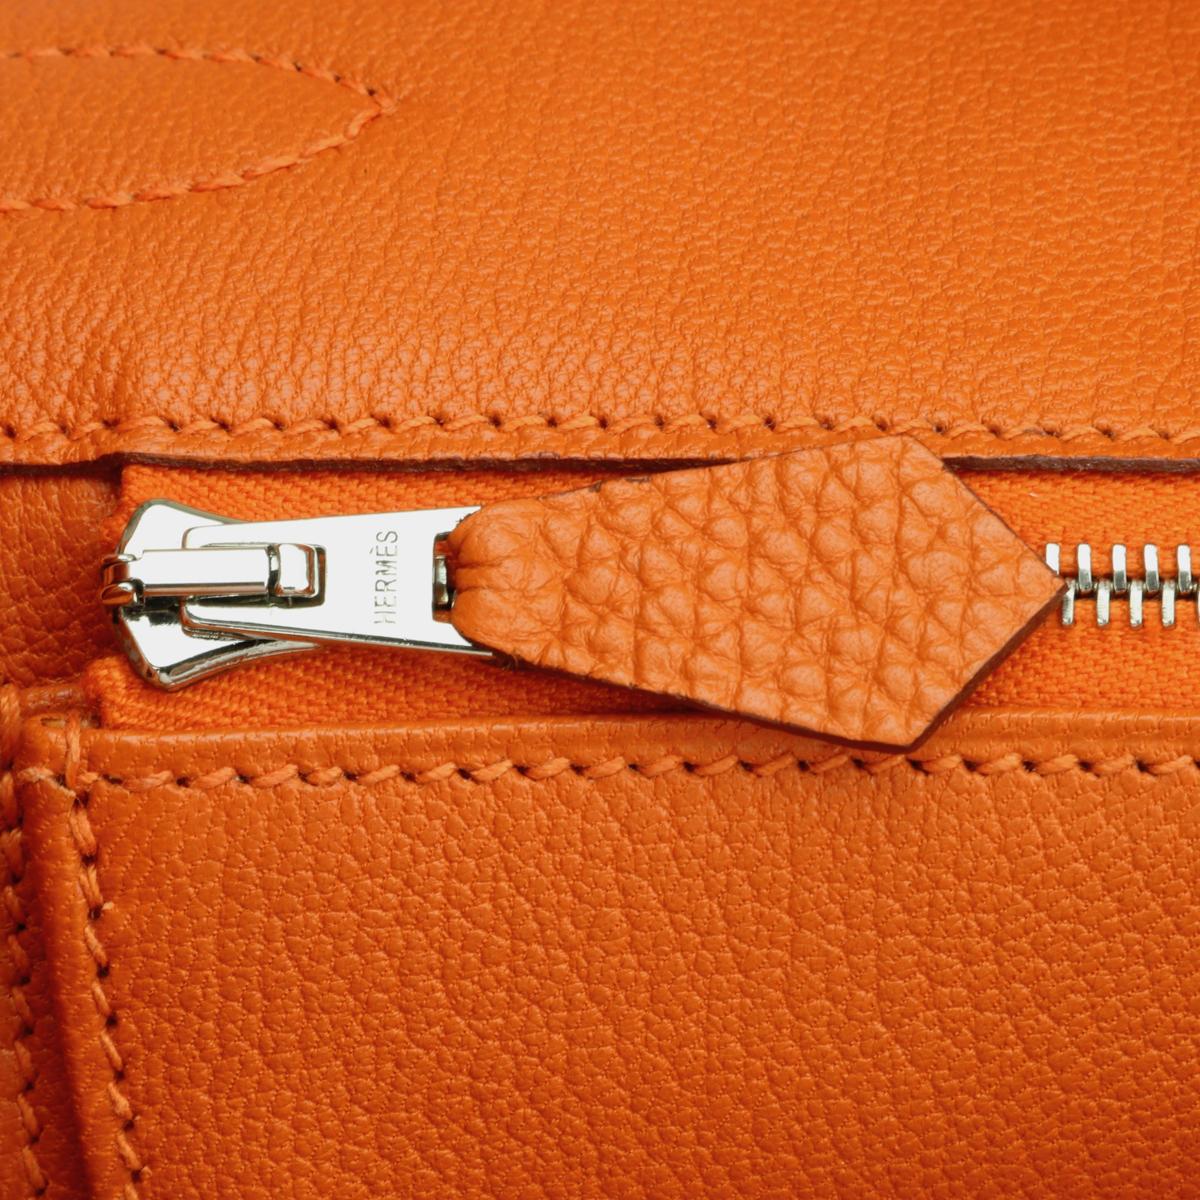 Hermès Birkin Bag 30cm Orange Togo Leather with Palladium Hardware Stamp M 2009 13